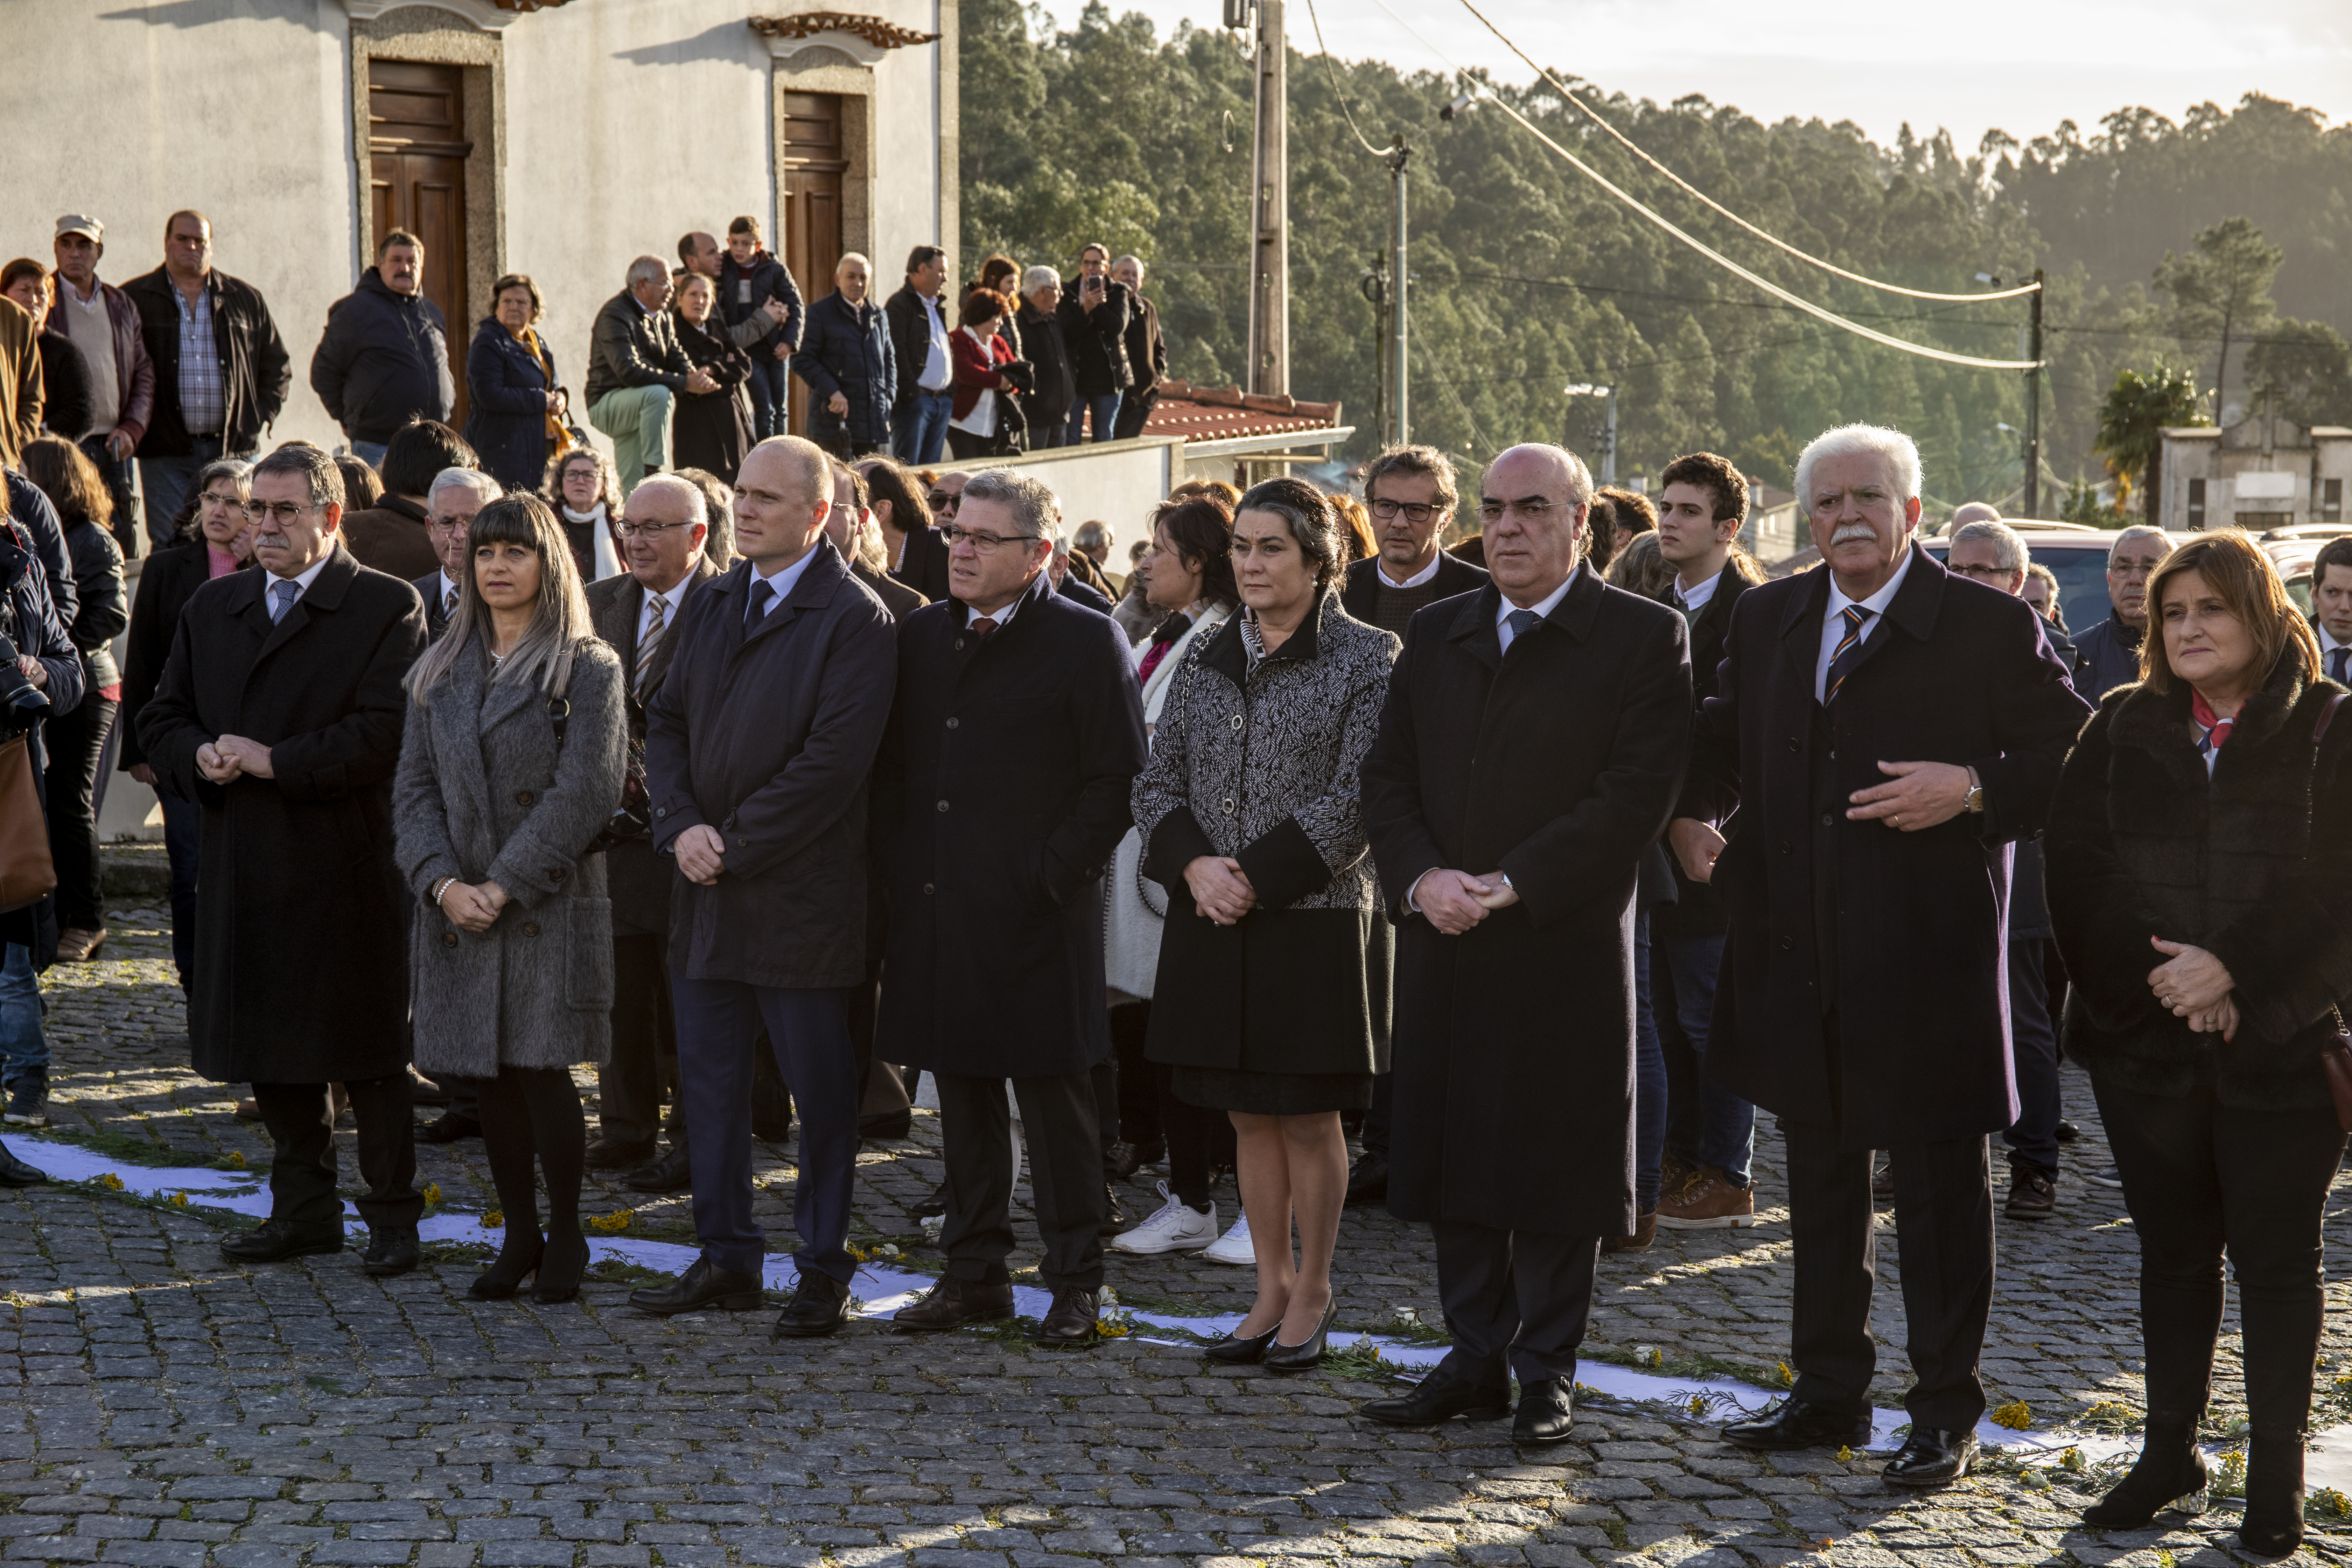 Executivo municipal marcou presença na cerimónia de transladação de D. António Barroso